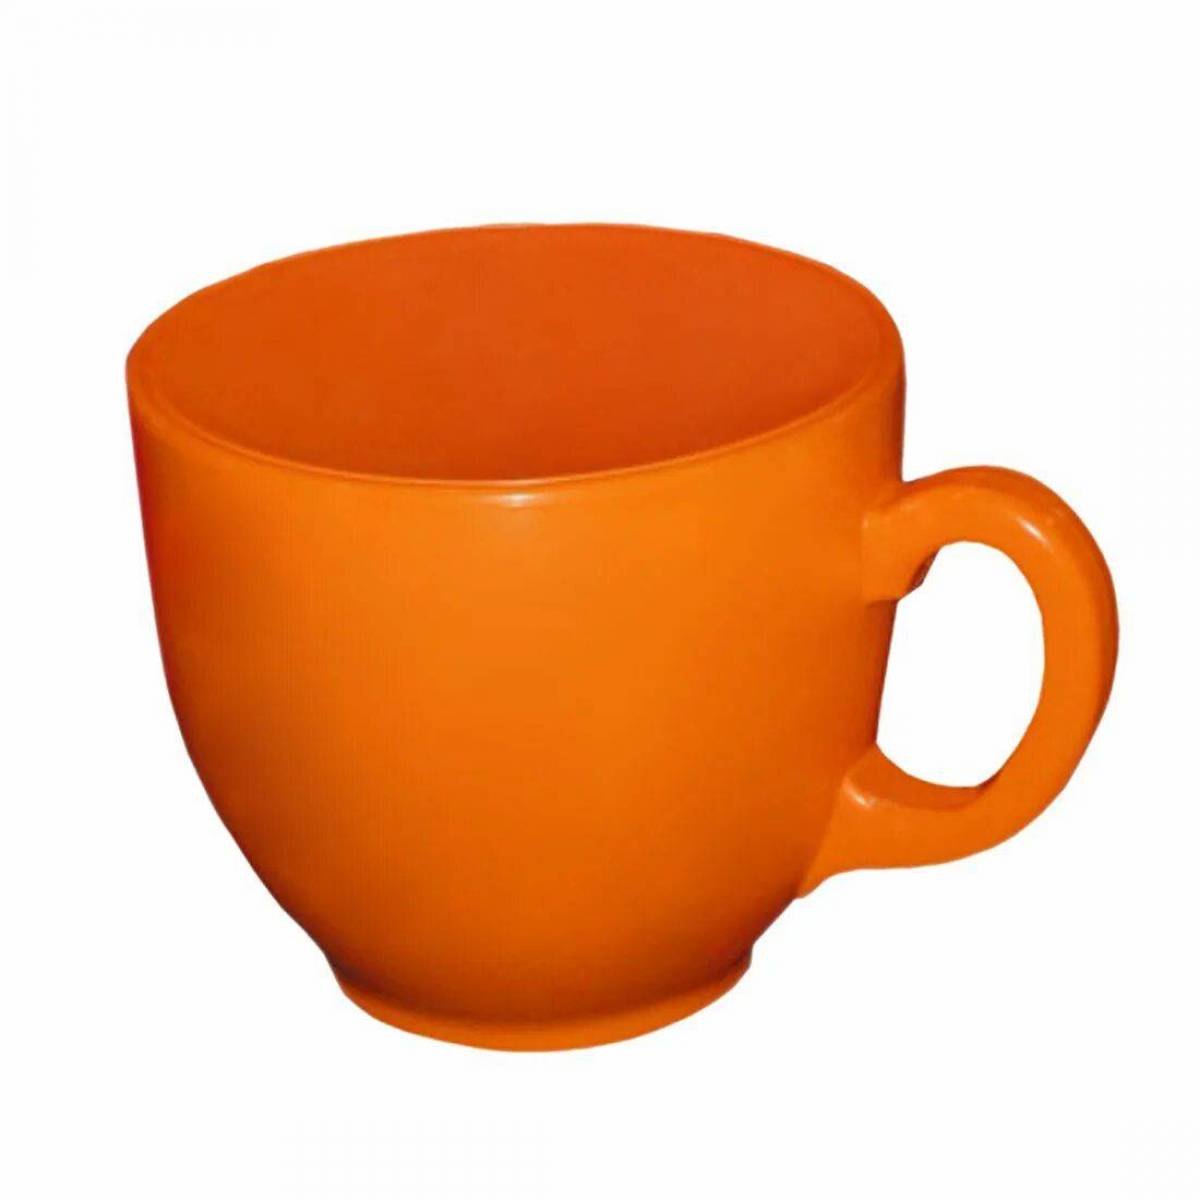 Картинки предметов. Чашка для дошкольников. Оранжевая чашка. Чашка карточка для детей. Чашки для ДОУ.